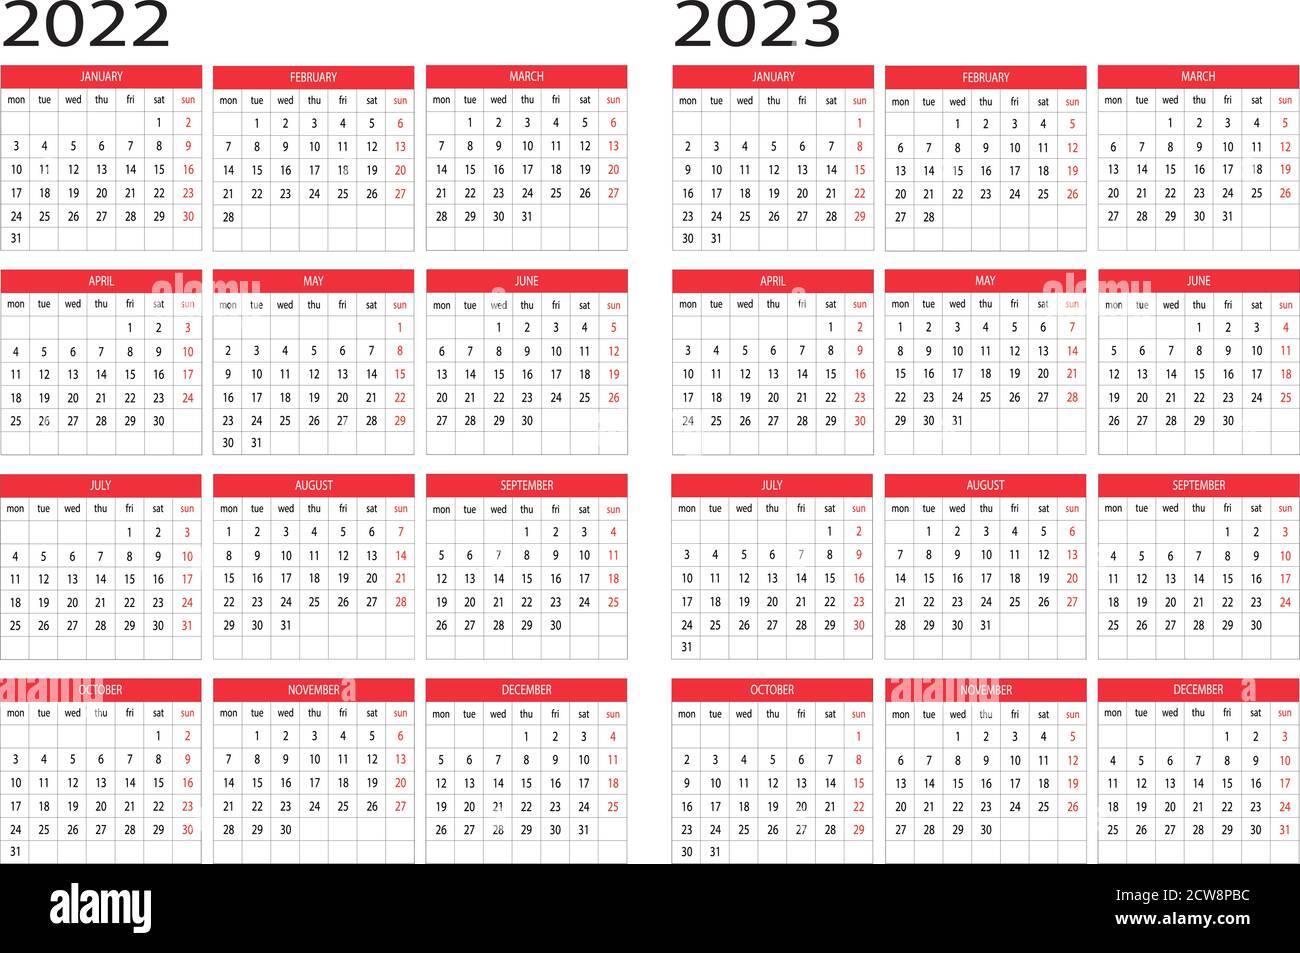 Calendar year 2022 2023 Stock Vector Image & Art - Alamy